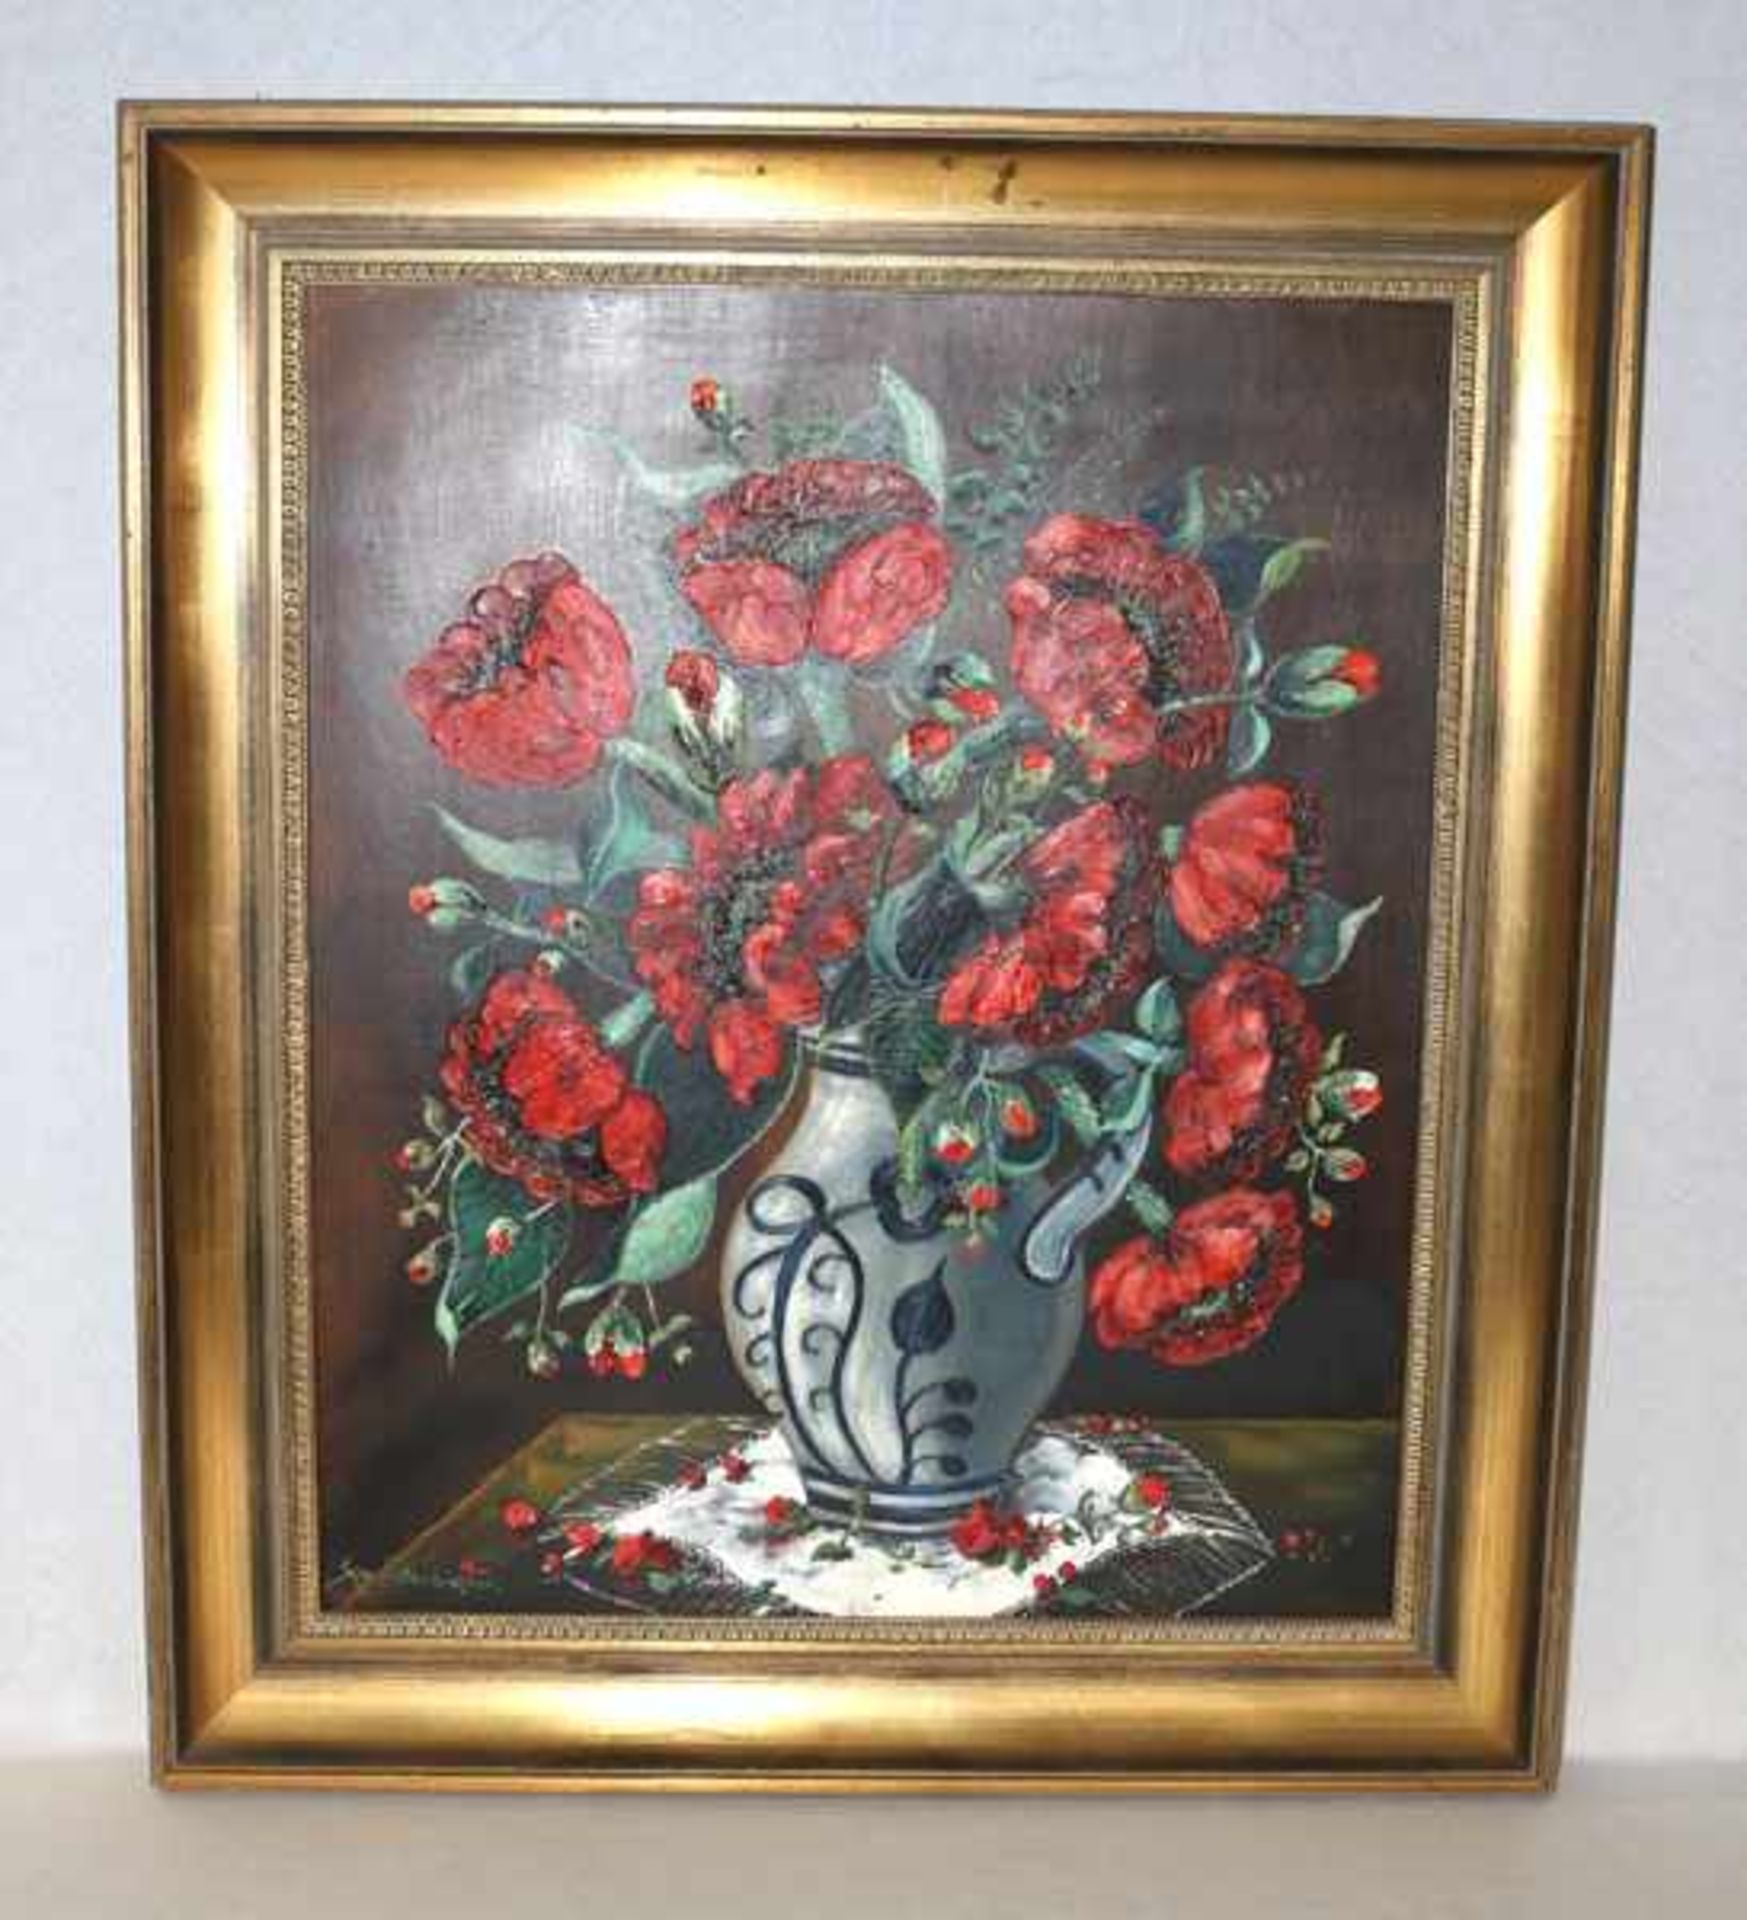 Gemälde ÖL/Malkarton 'Mohnblumen in Vase', signiert Sepp Lettenbichler, * 27.6.1919 in München,